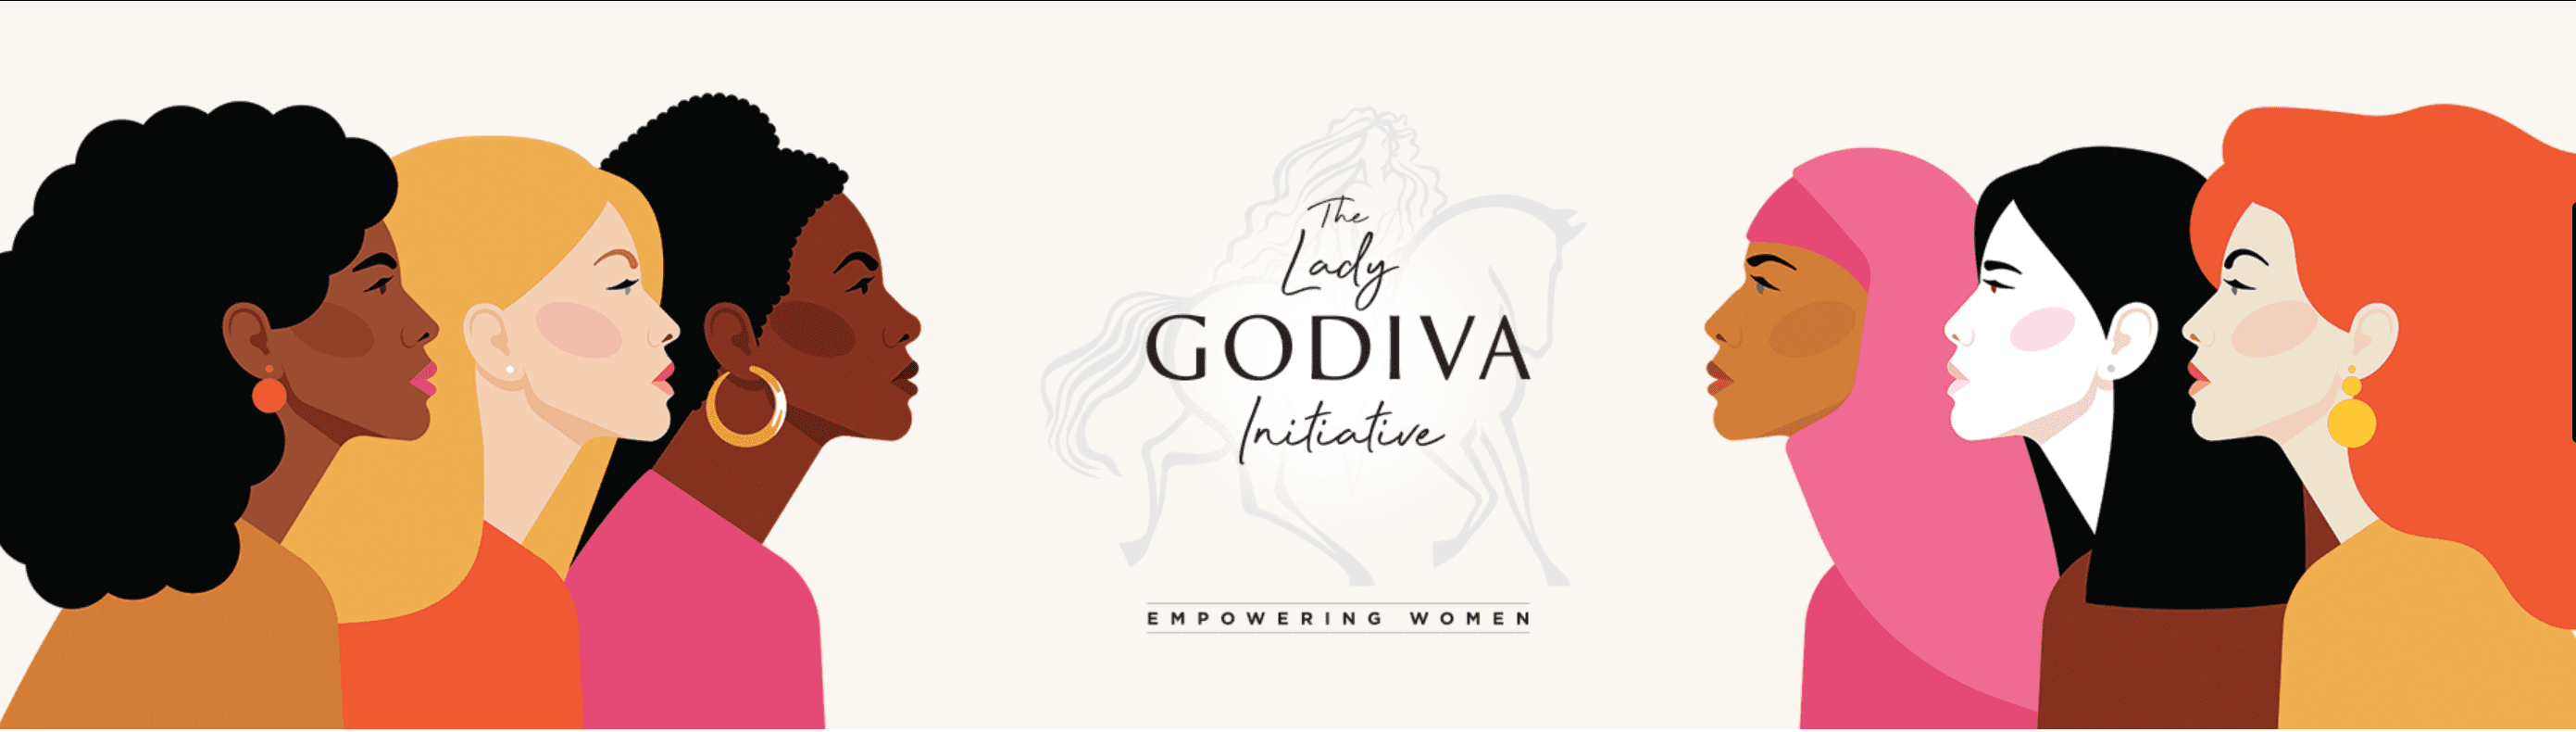 Lady Godiva Award website image 